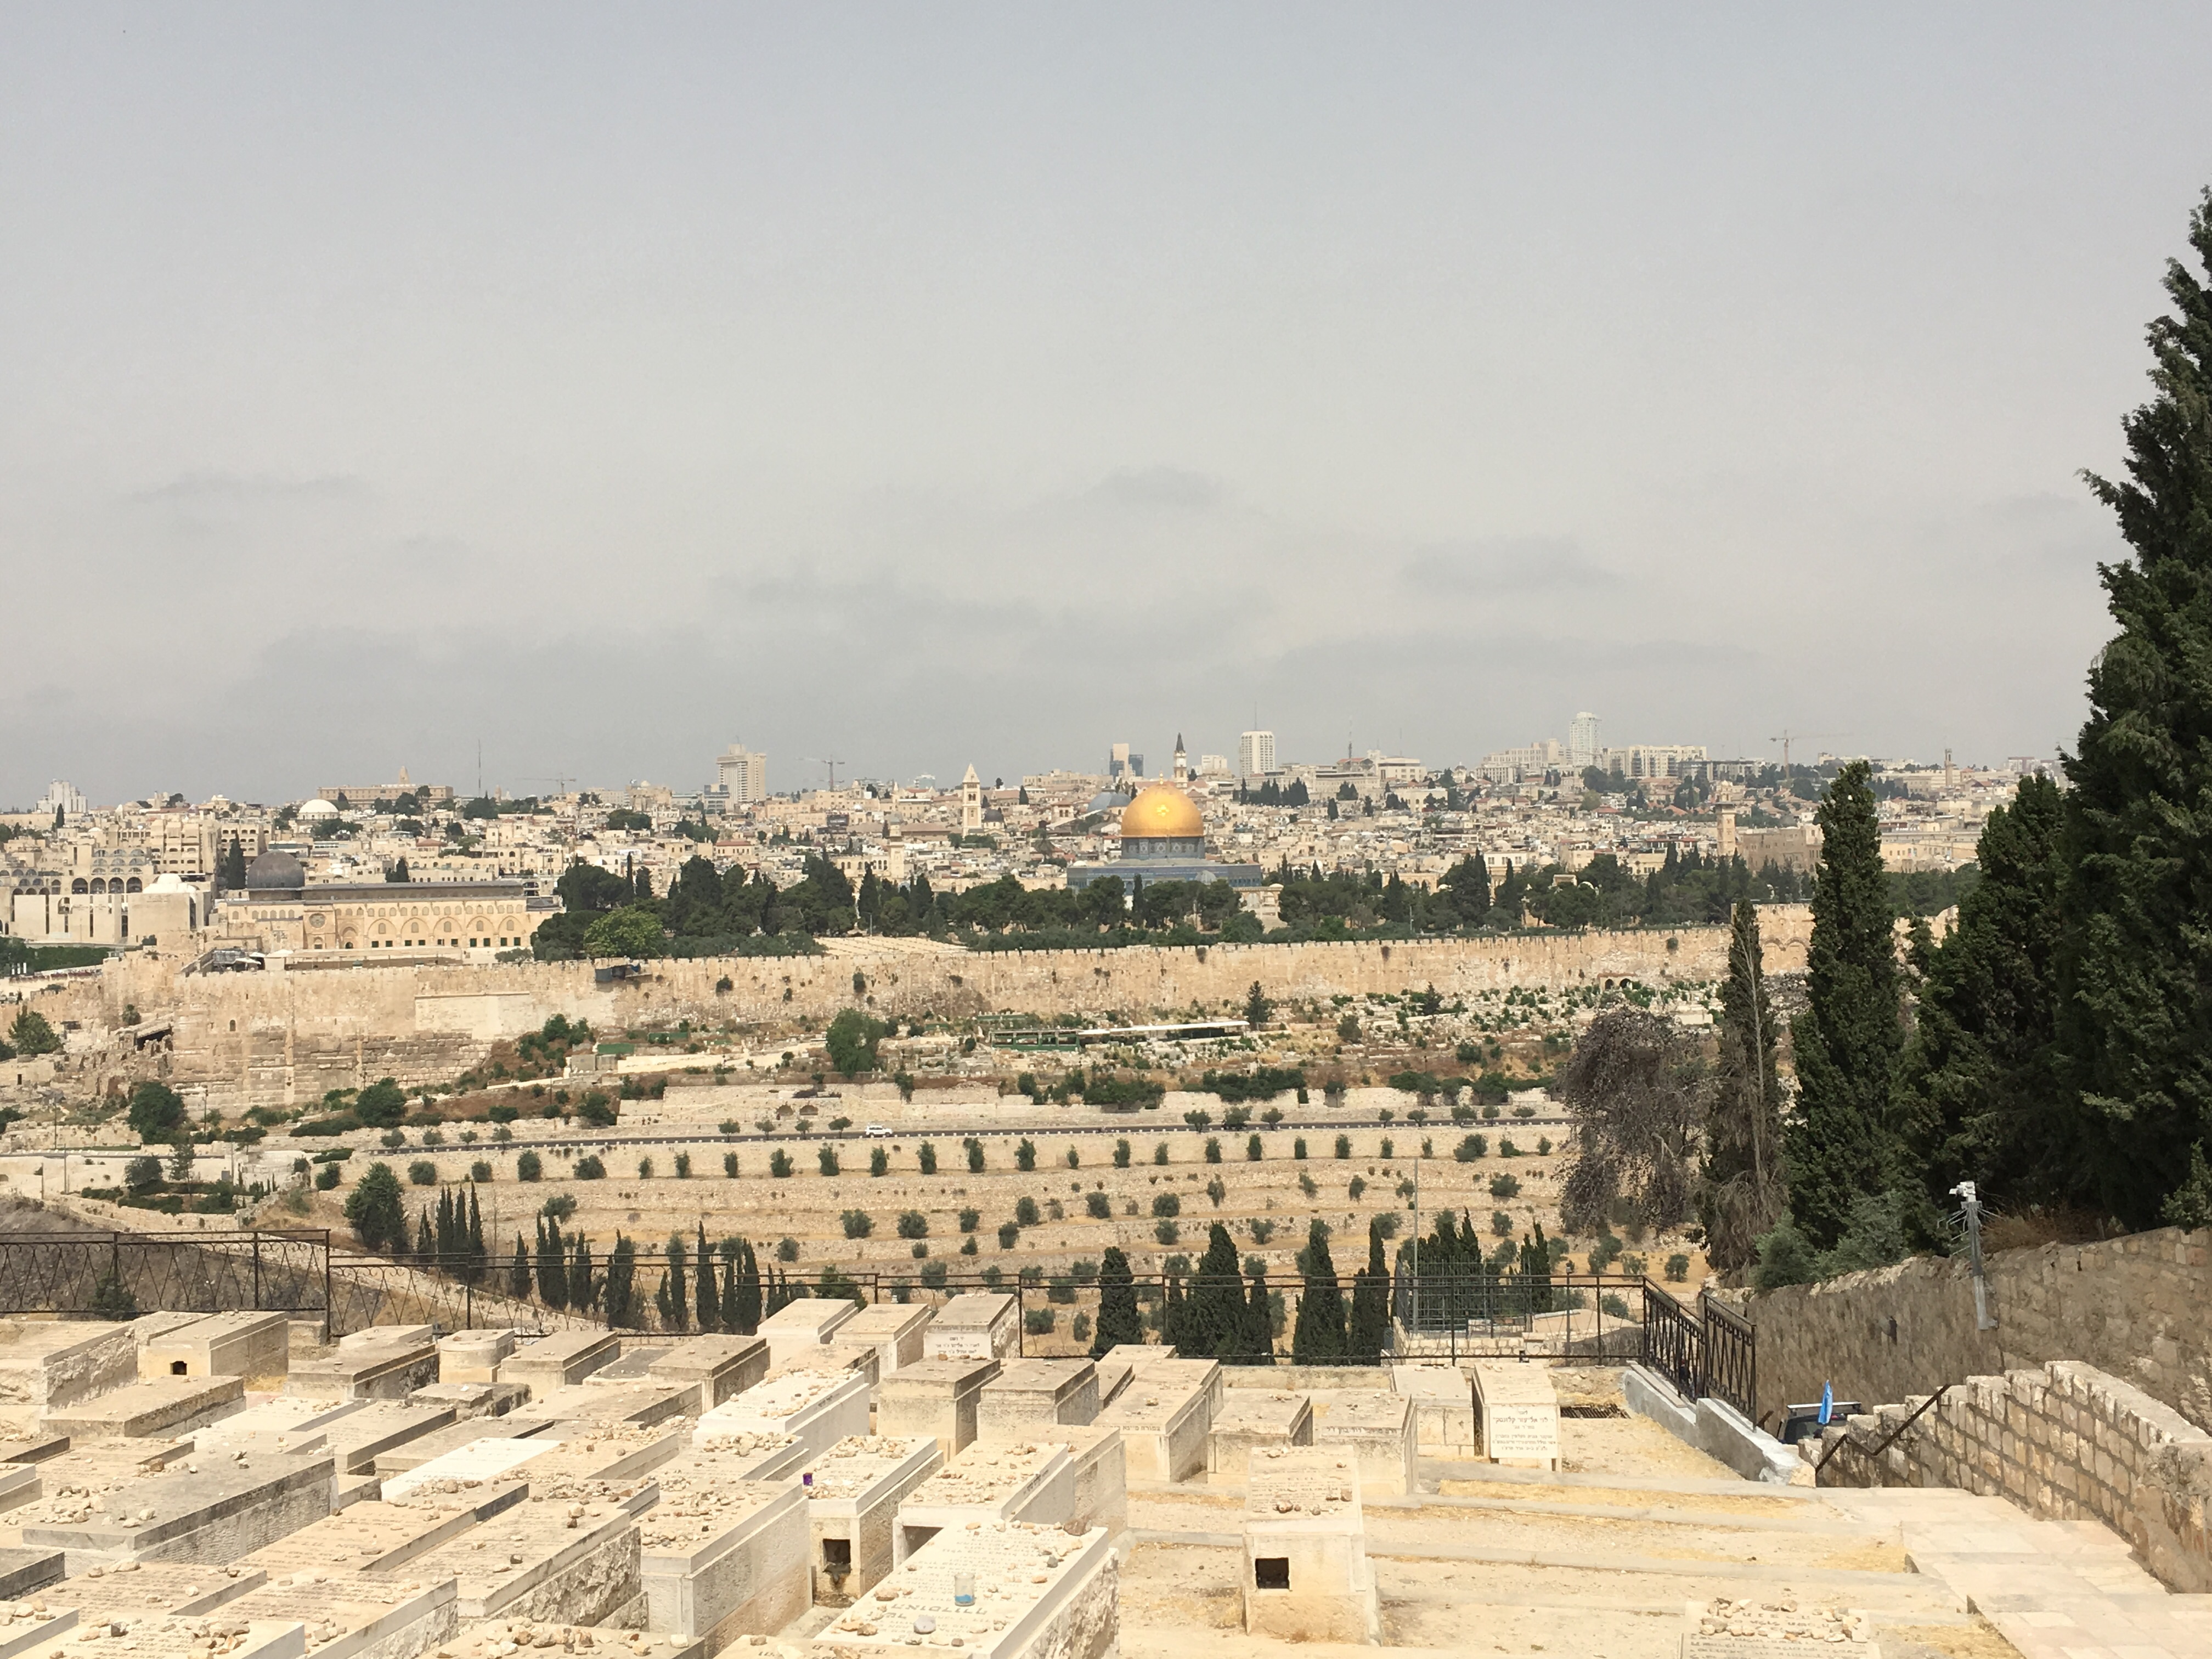 Mount of Olives. Jerusalem. 2019